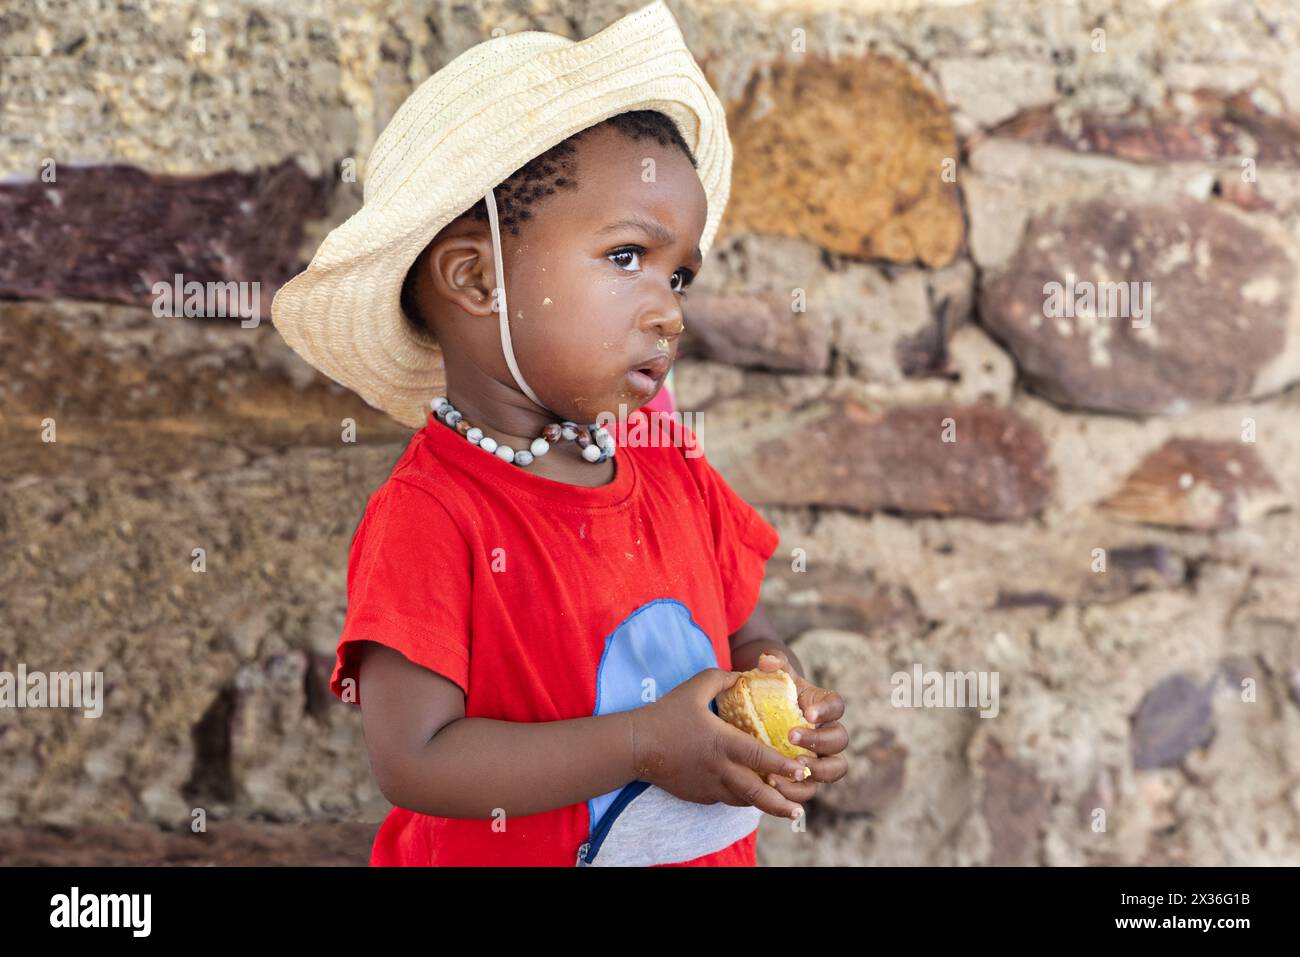 piccola ragazza africana affamata che mangia biscotti davanti alla casa nel cortile, indossando una maglietta rossa e un cappello di paglia Foto Stock